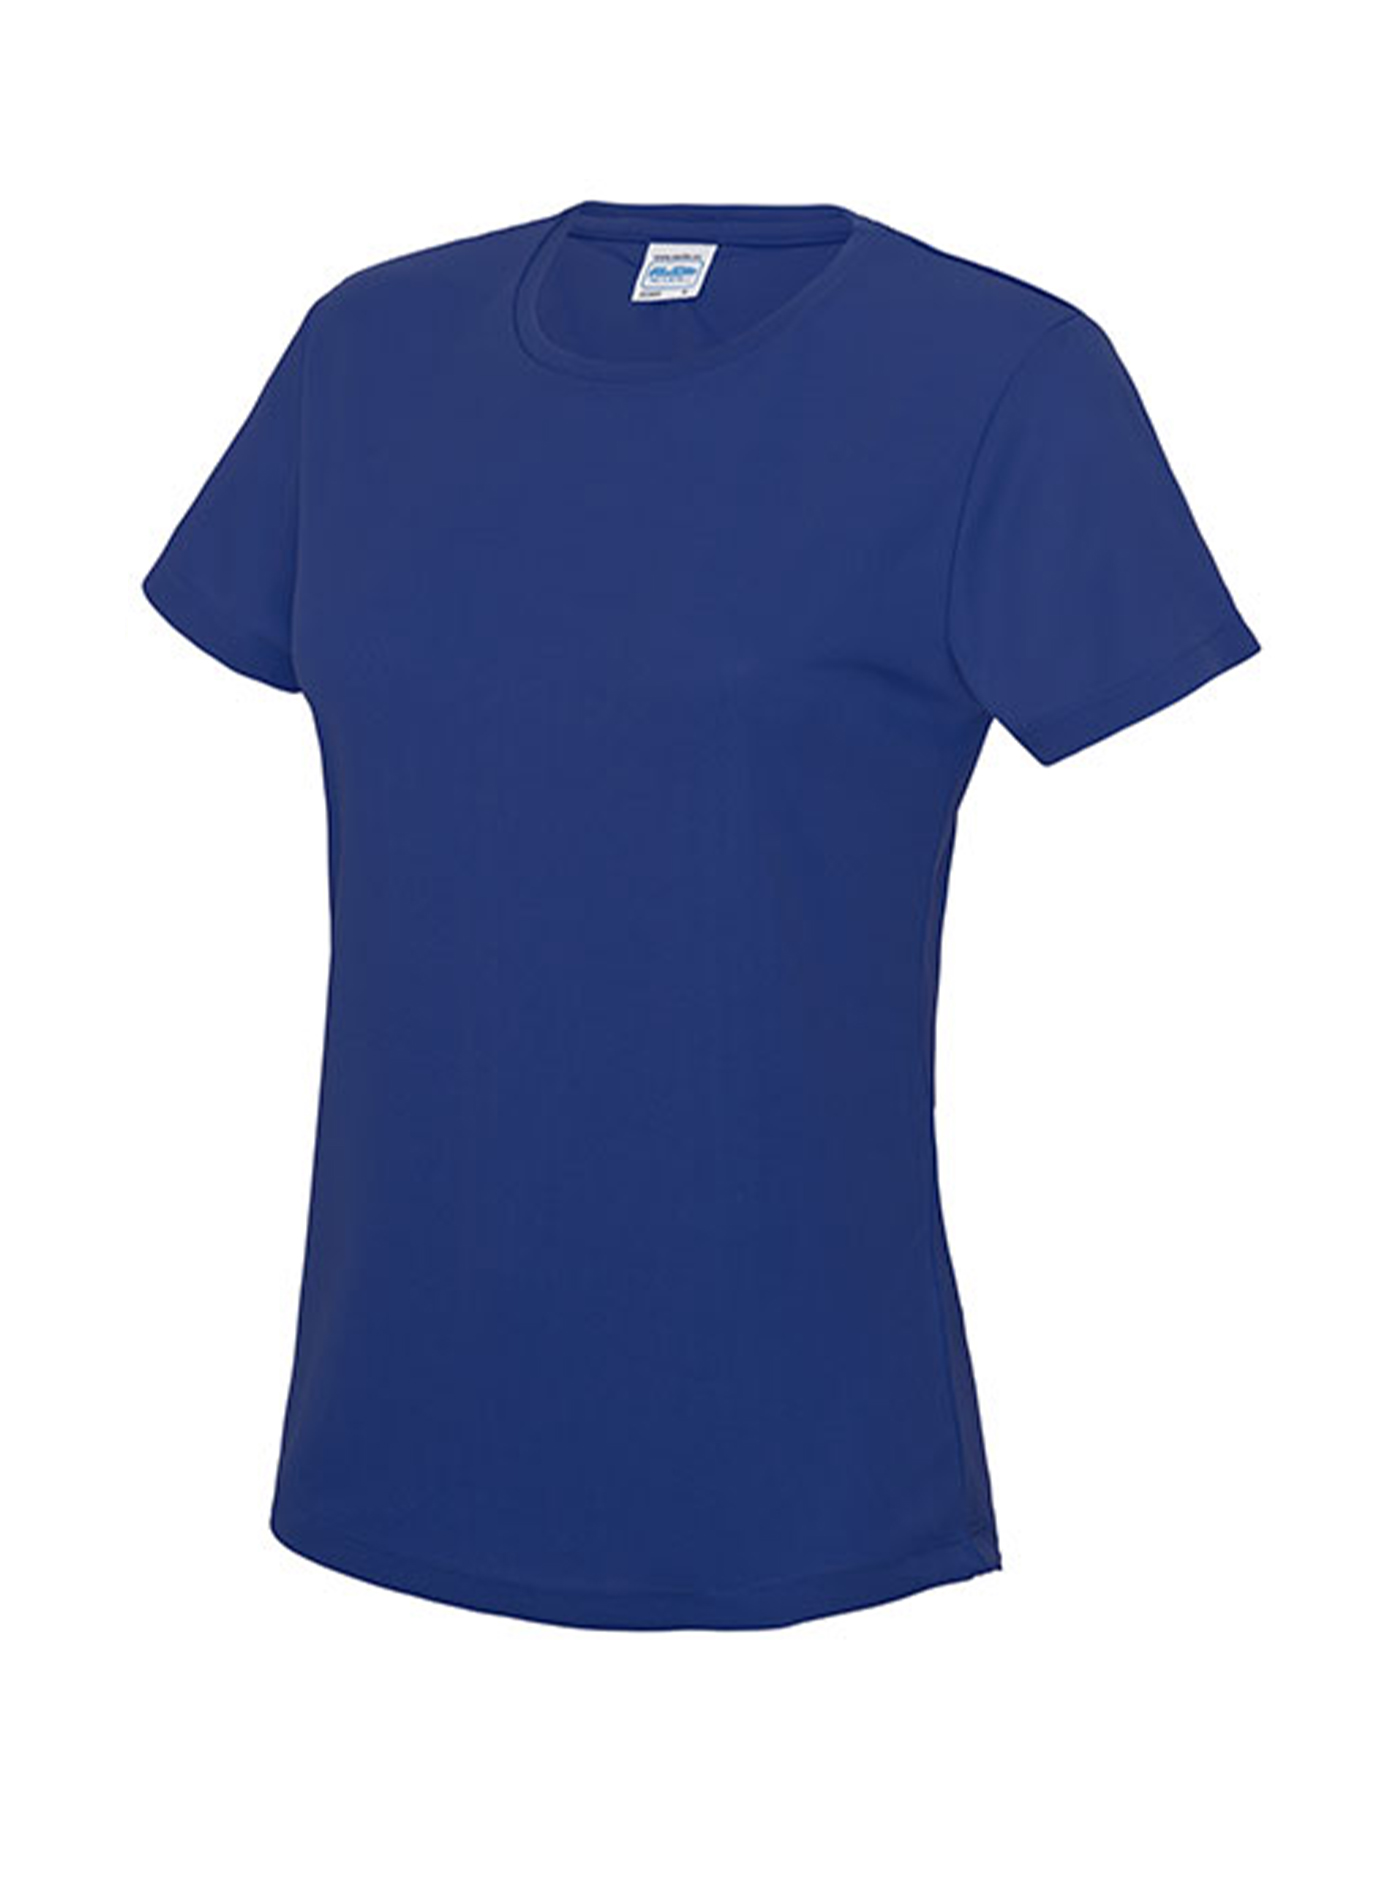 Dámské tričko Just Cool T - královská modrá XL